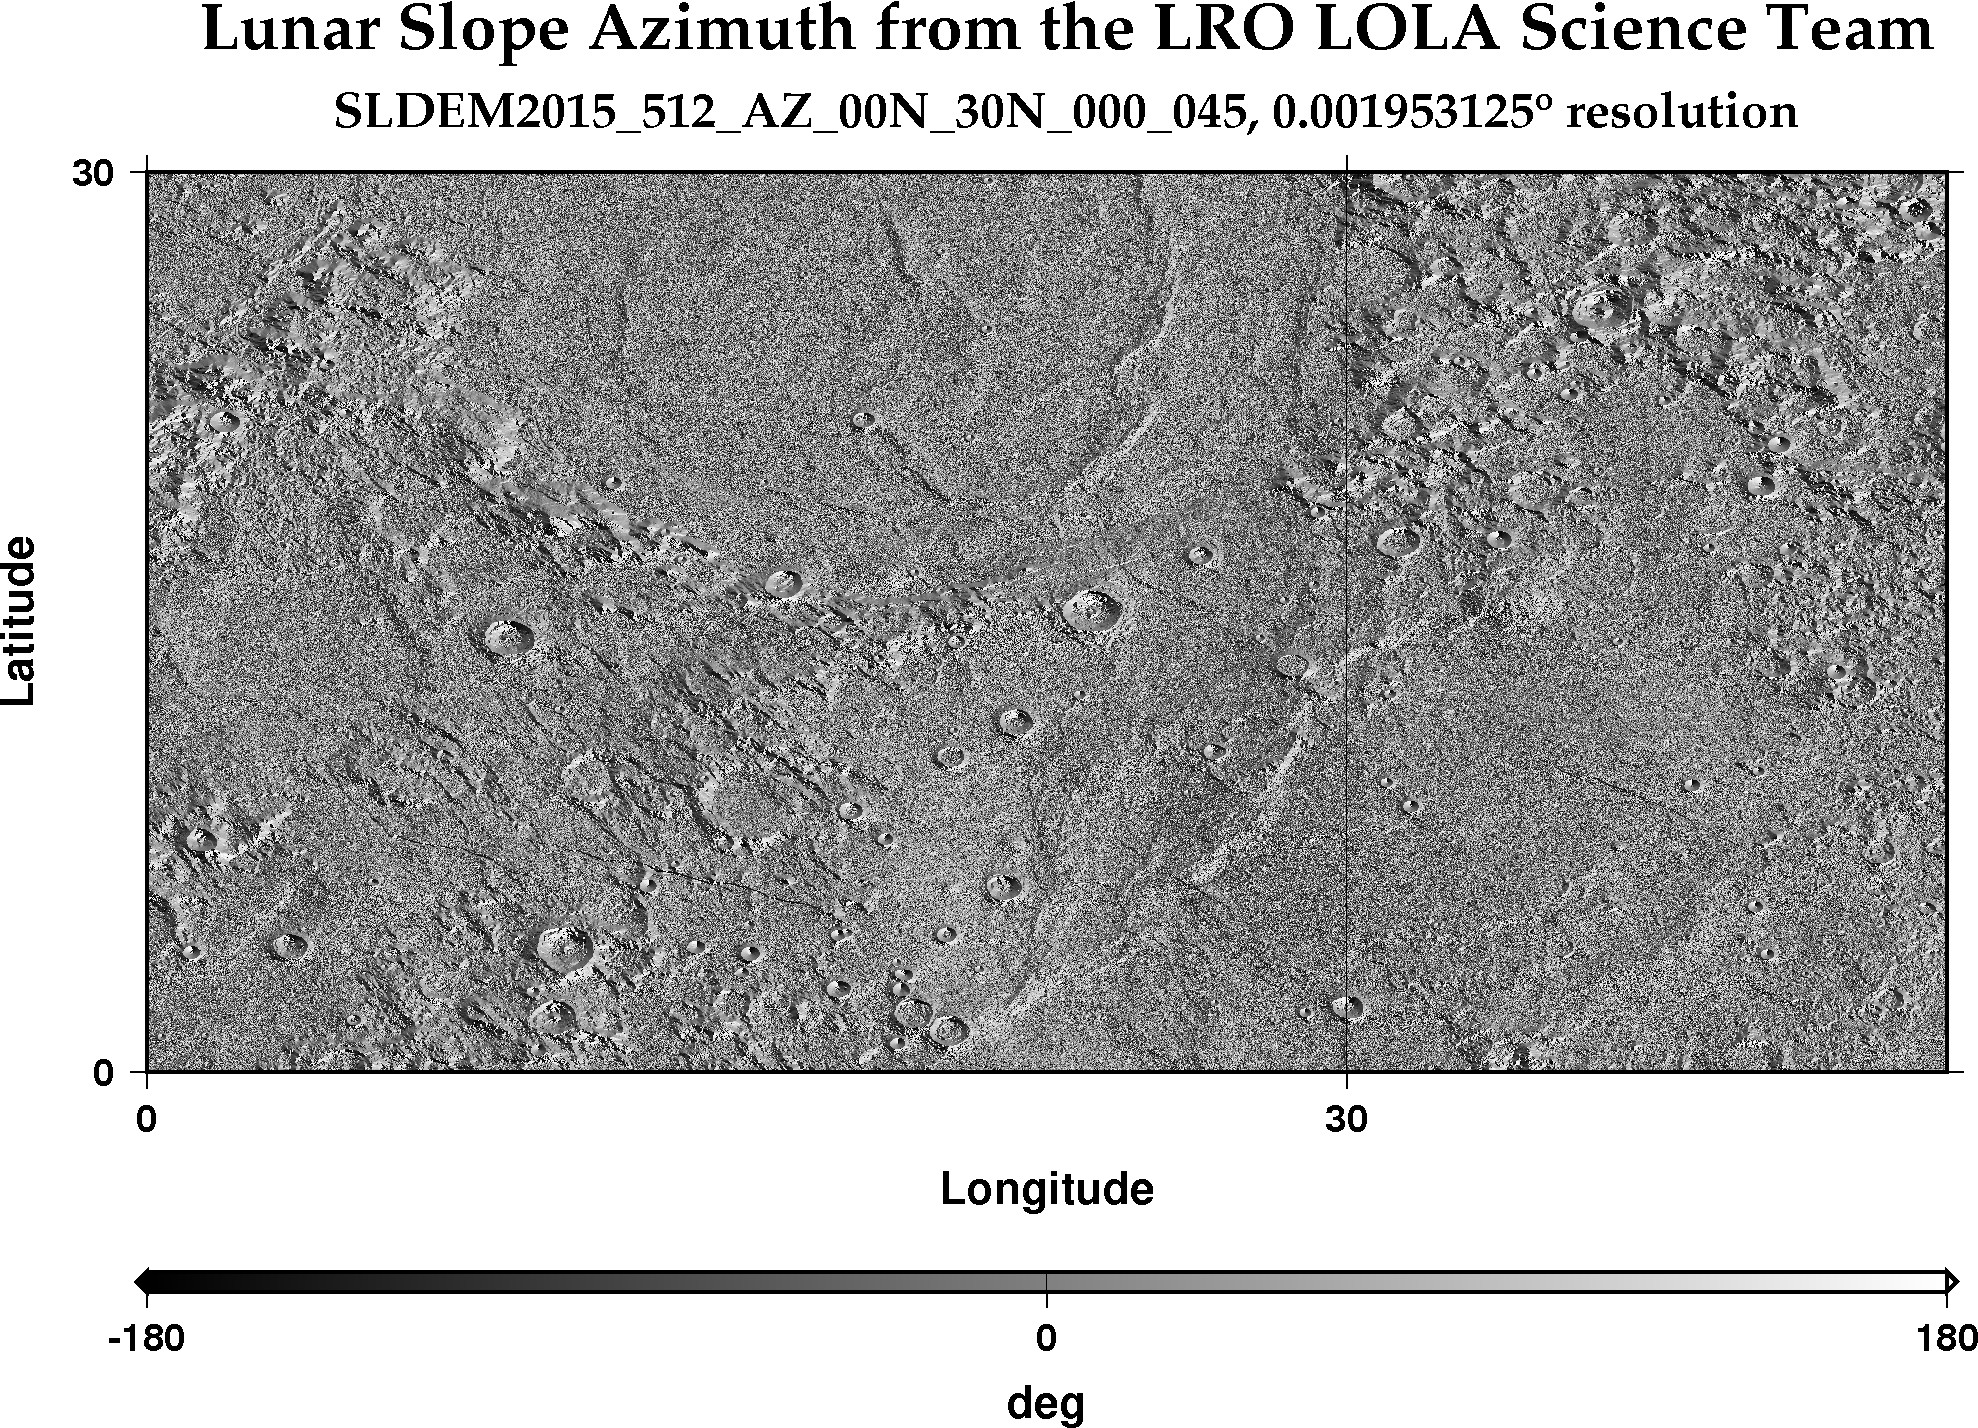 image of lunar topography for SLDEM2015_512_AZ_00N_30N_000_045